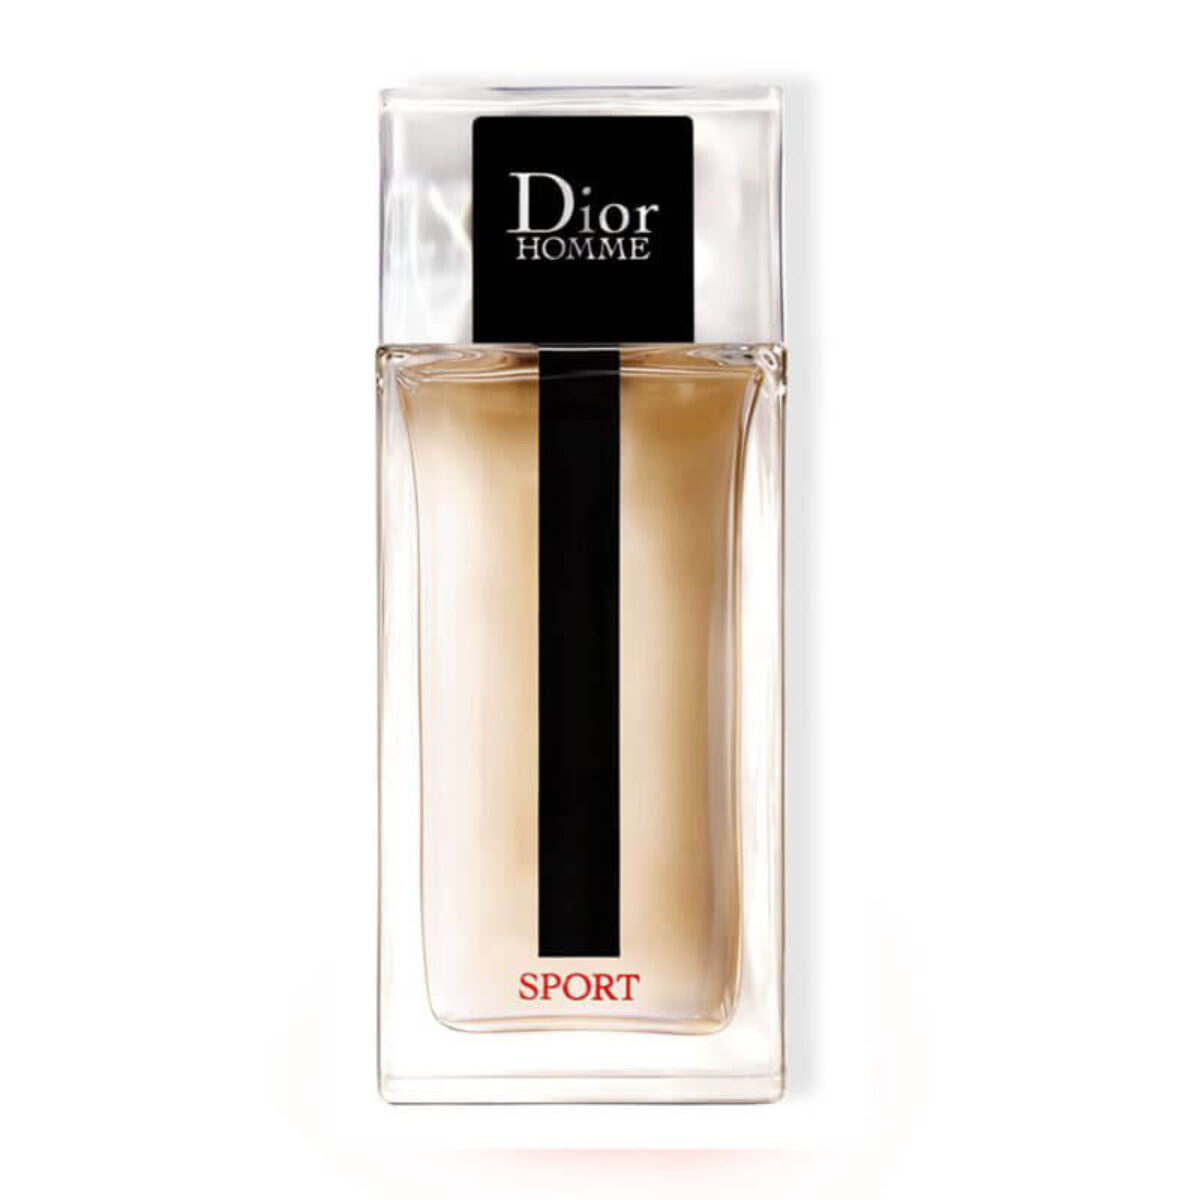 Nước Hoa Nam Christian Dior Homme Chiết 10ml Cologne EDT New Intense  Parfum Sport Chính Hãng  Nước Hoa Nước Hoét  Shopee Việt Nam